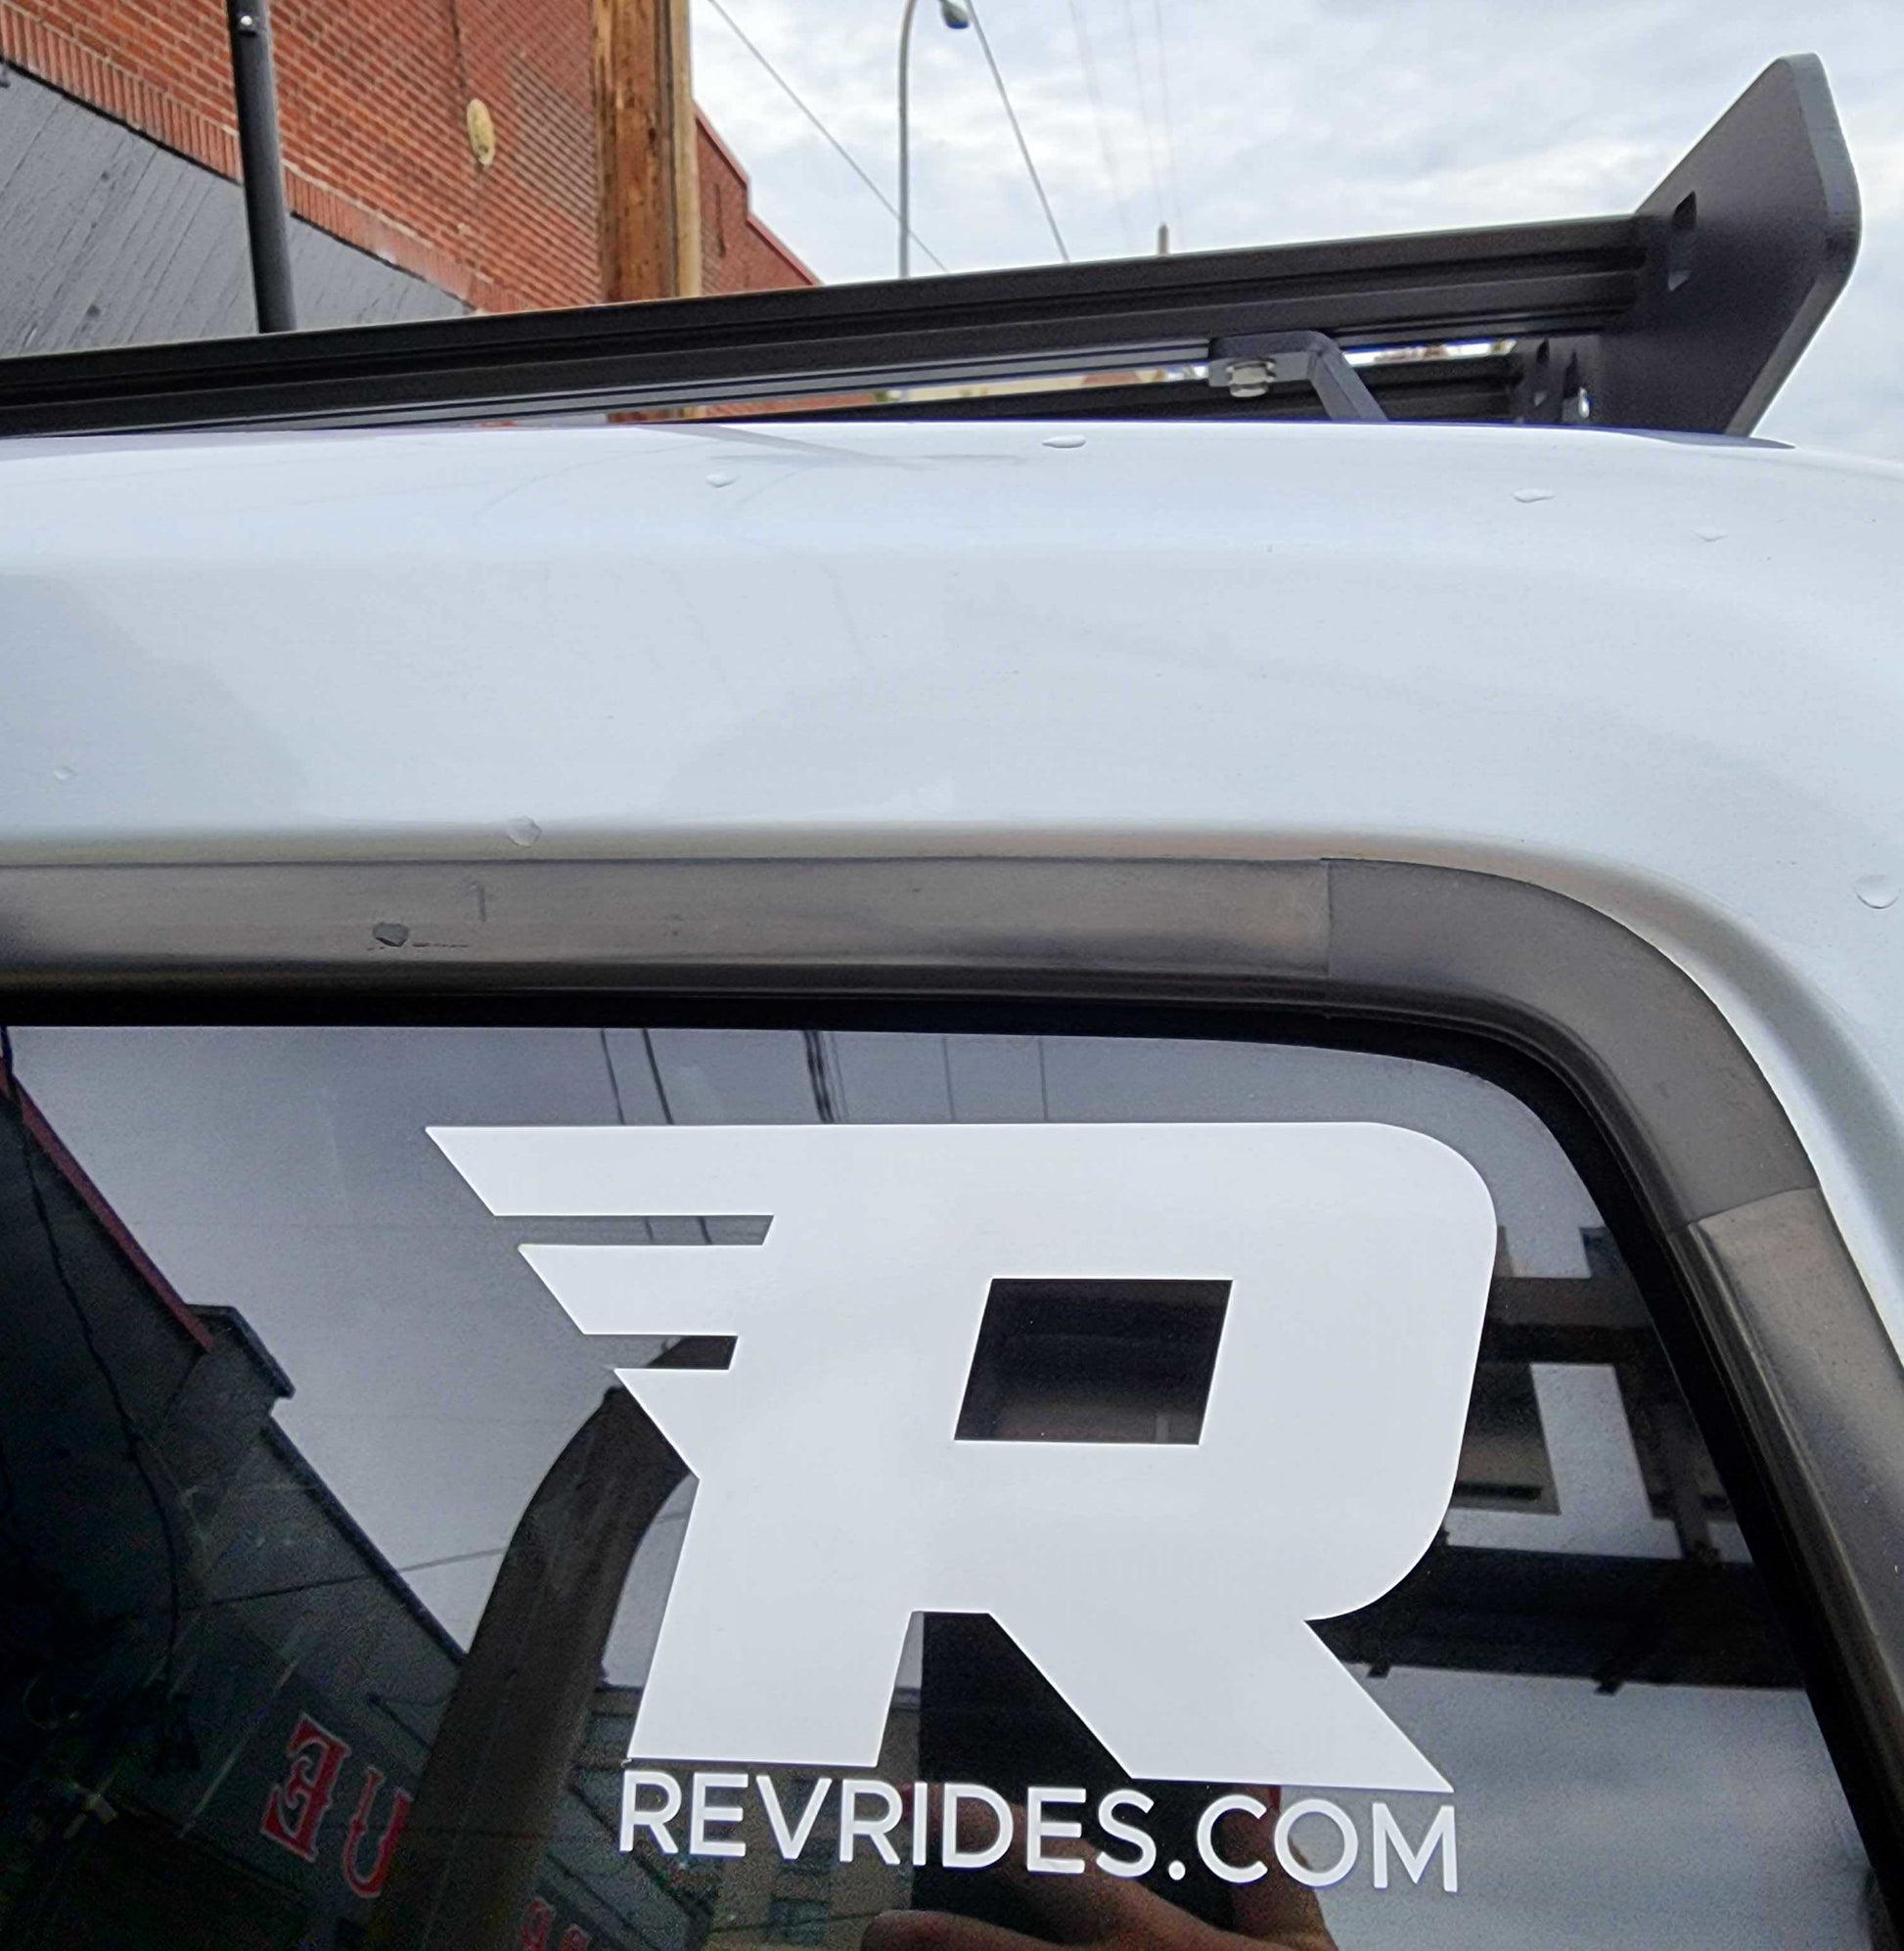 REV Rides Window Sticker - REVRides